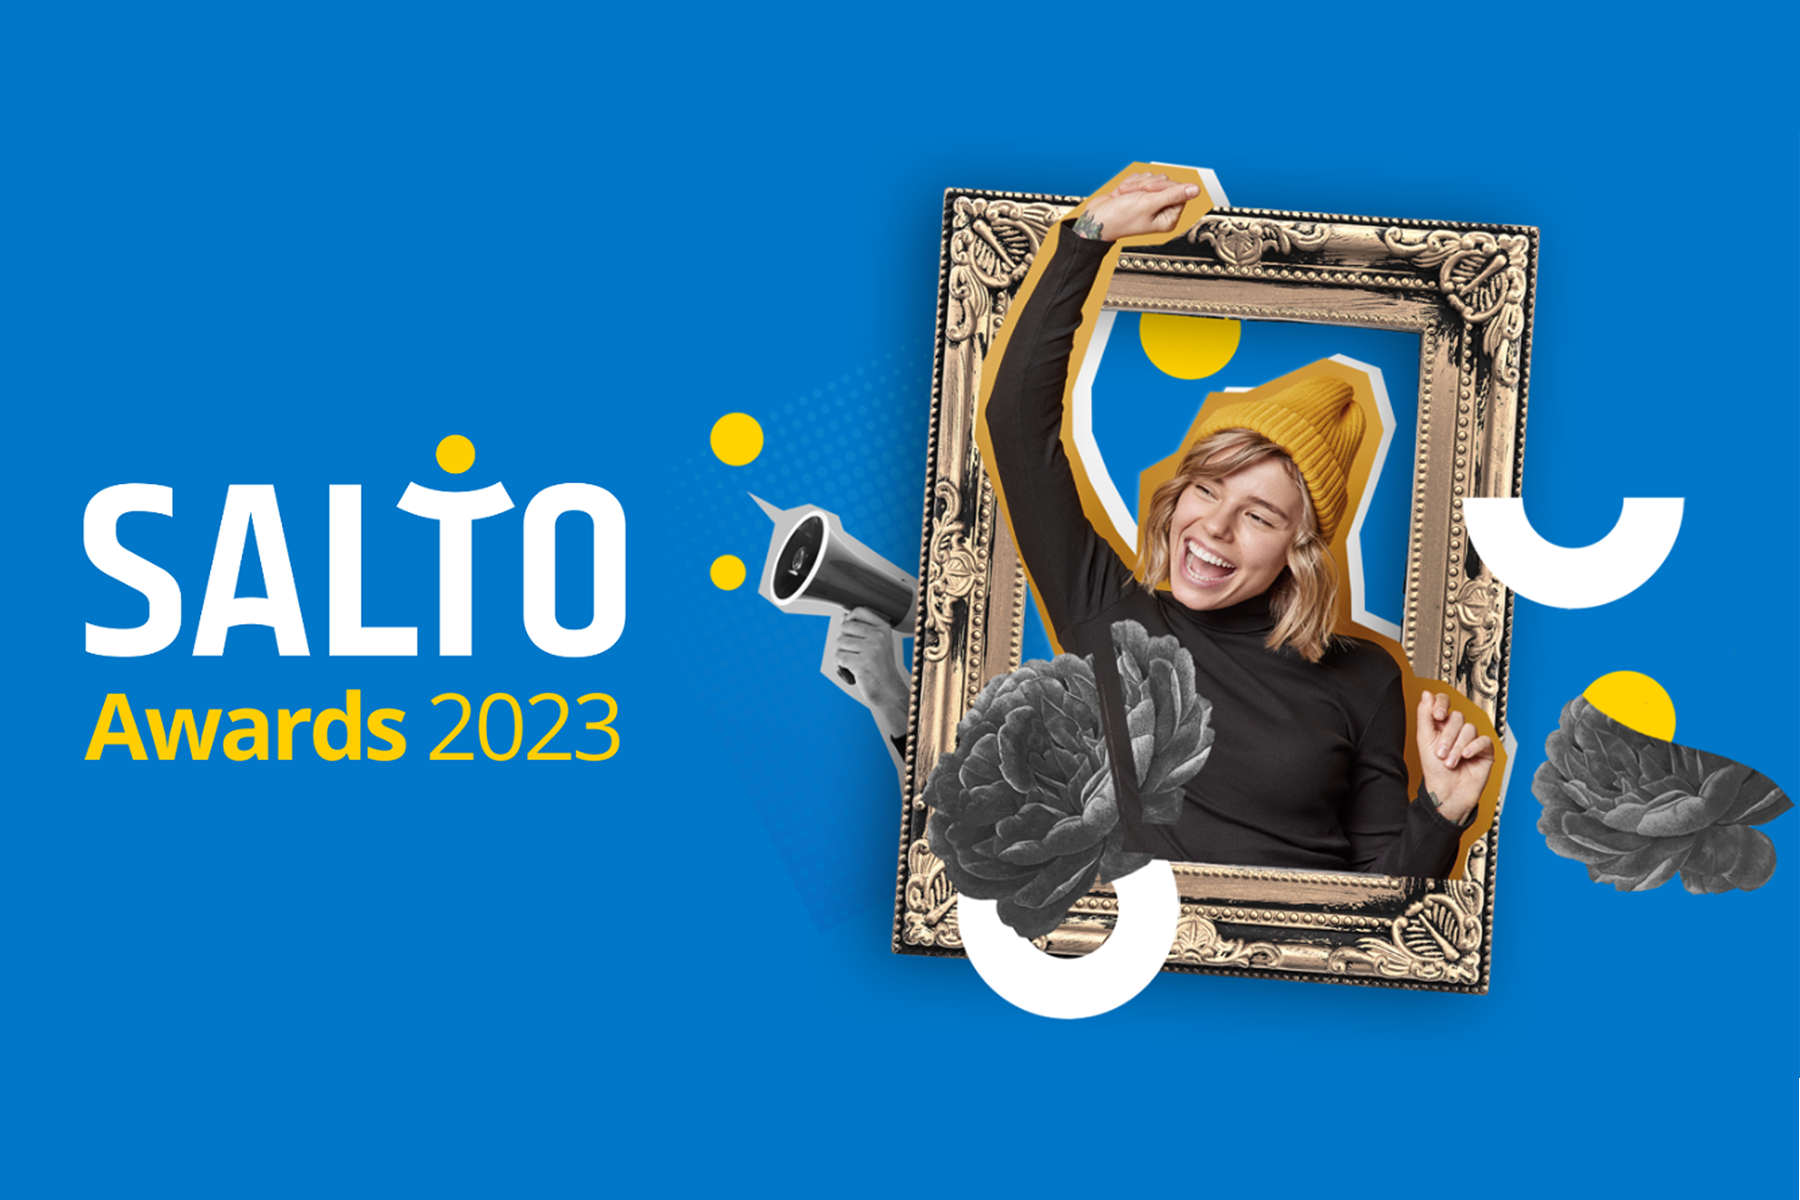 SALTO Awards 2023